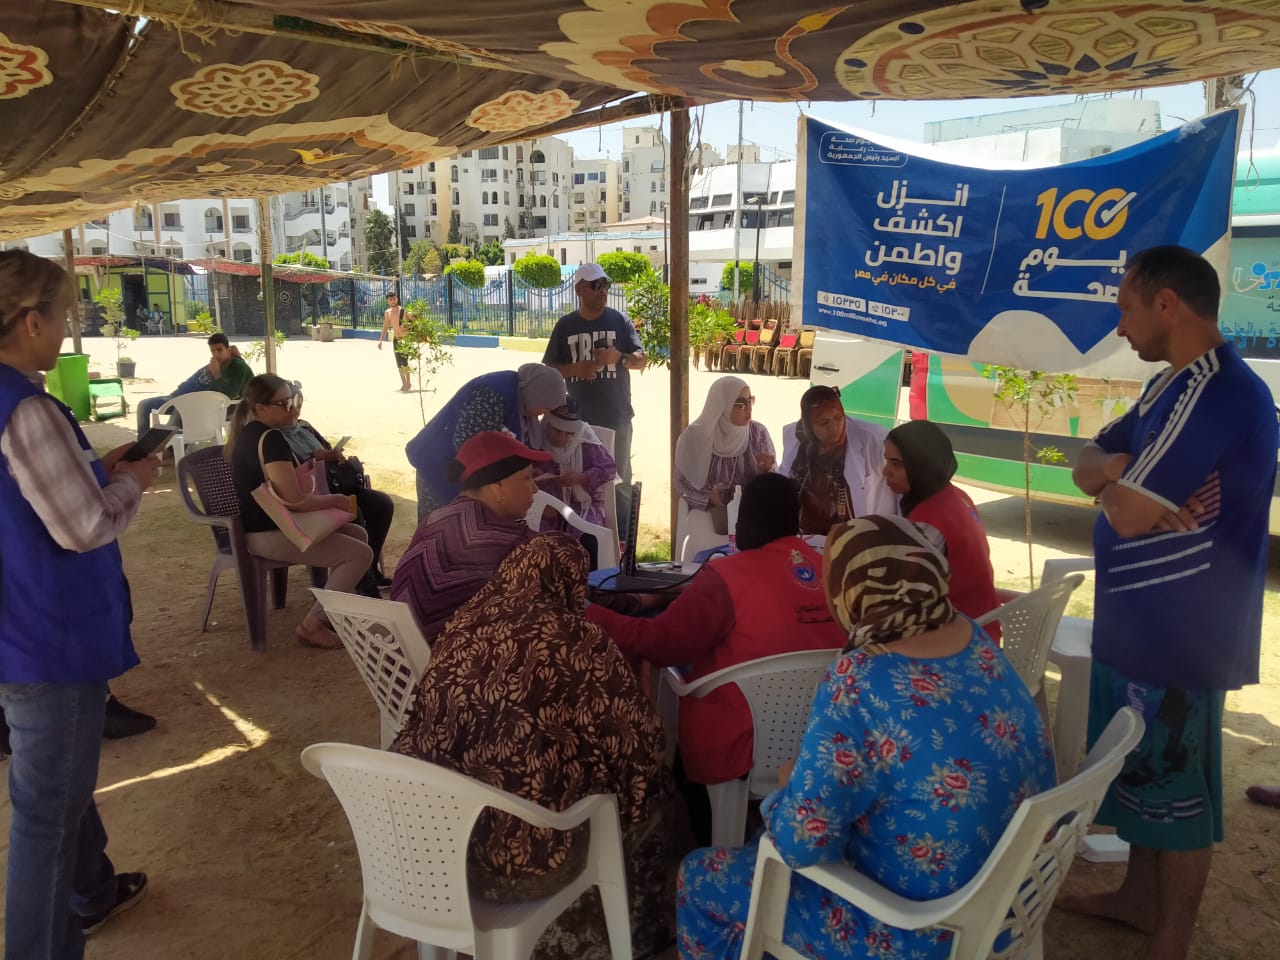 على شواطئ الإسماعيلية "١٠٠ يوم صحة" تقدم خدمات طبية مجانية